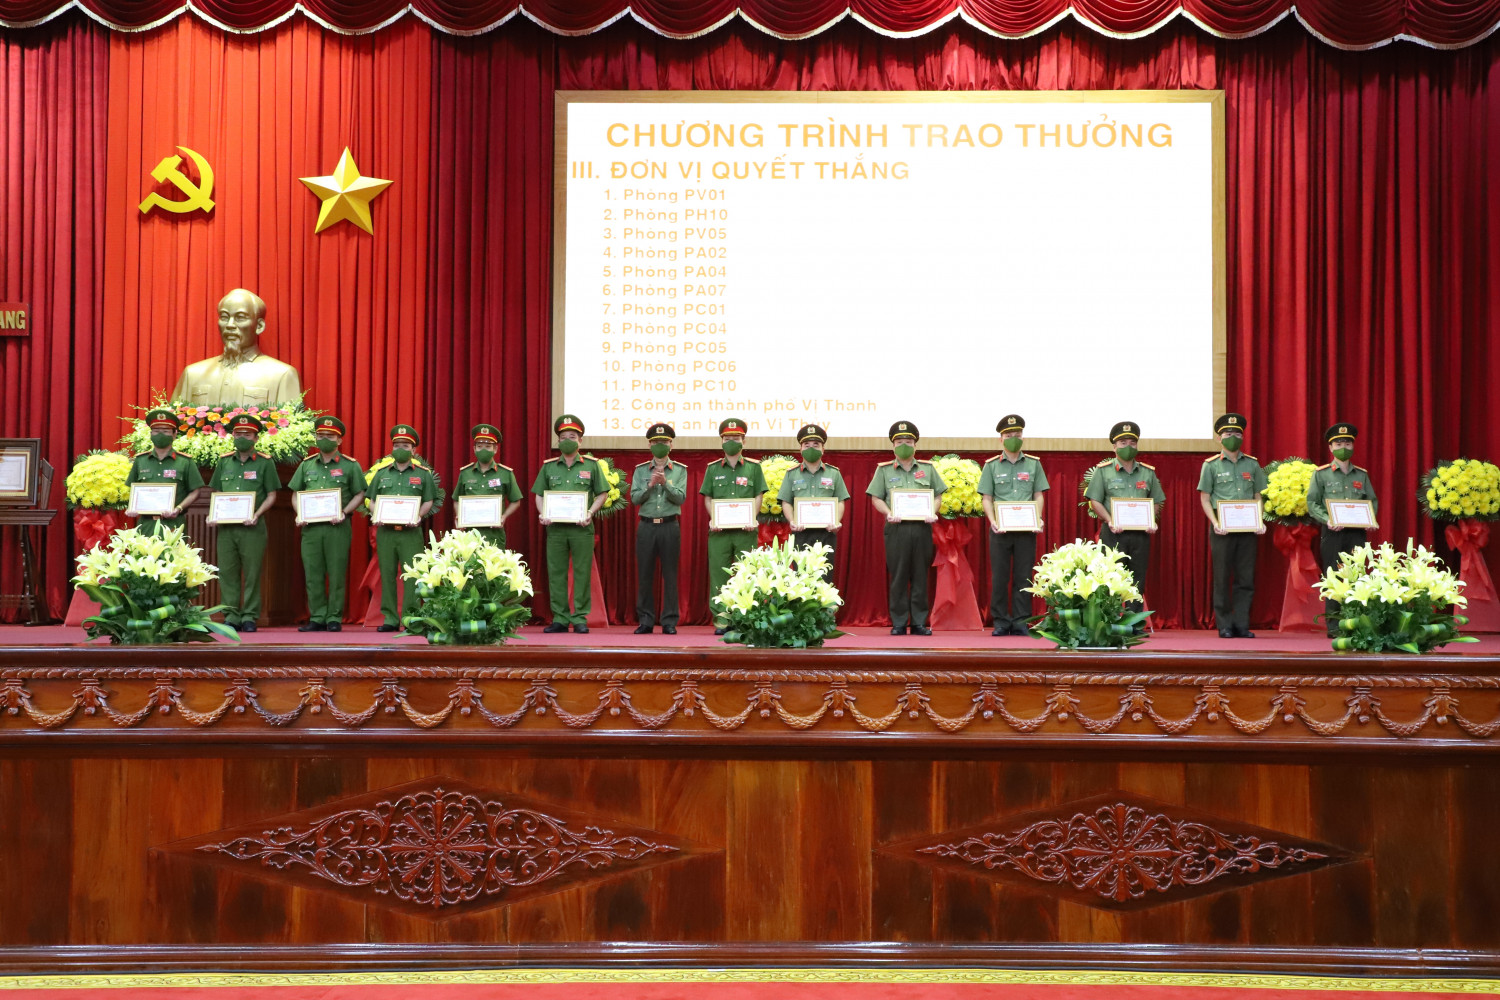 Đồng chí Thượng tá Huỳnh Việt Hòa, Ủy viên Ban Thường vụ Tỉnh ủy, Giám đốc Công an tỉnh trao Đơn vị Quyết thắng cho tập thể có thành tích xuất sắc